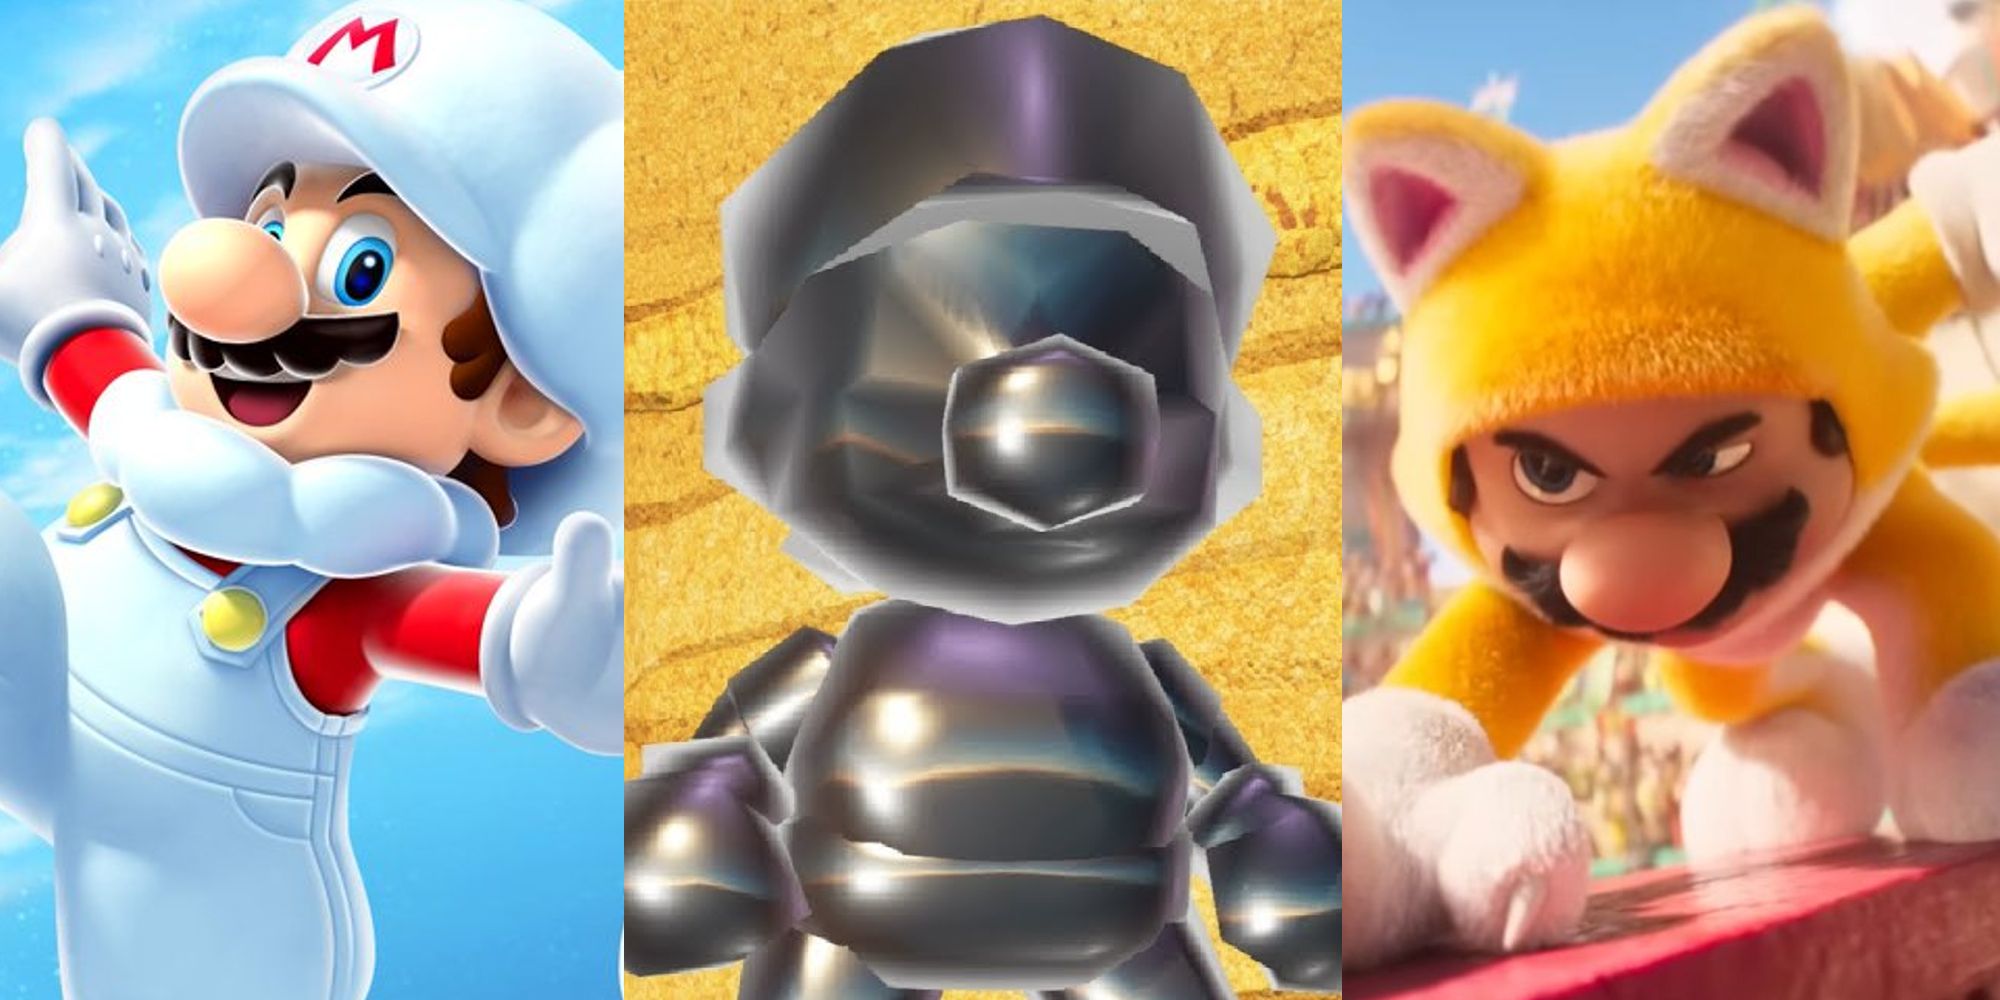 Cloud Mario; Metal Mario in Odyssey; Cat Mario in the Mario Movie